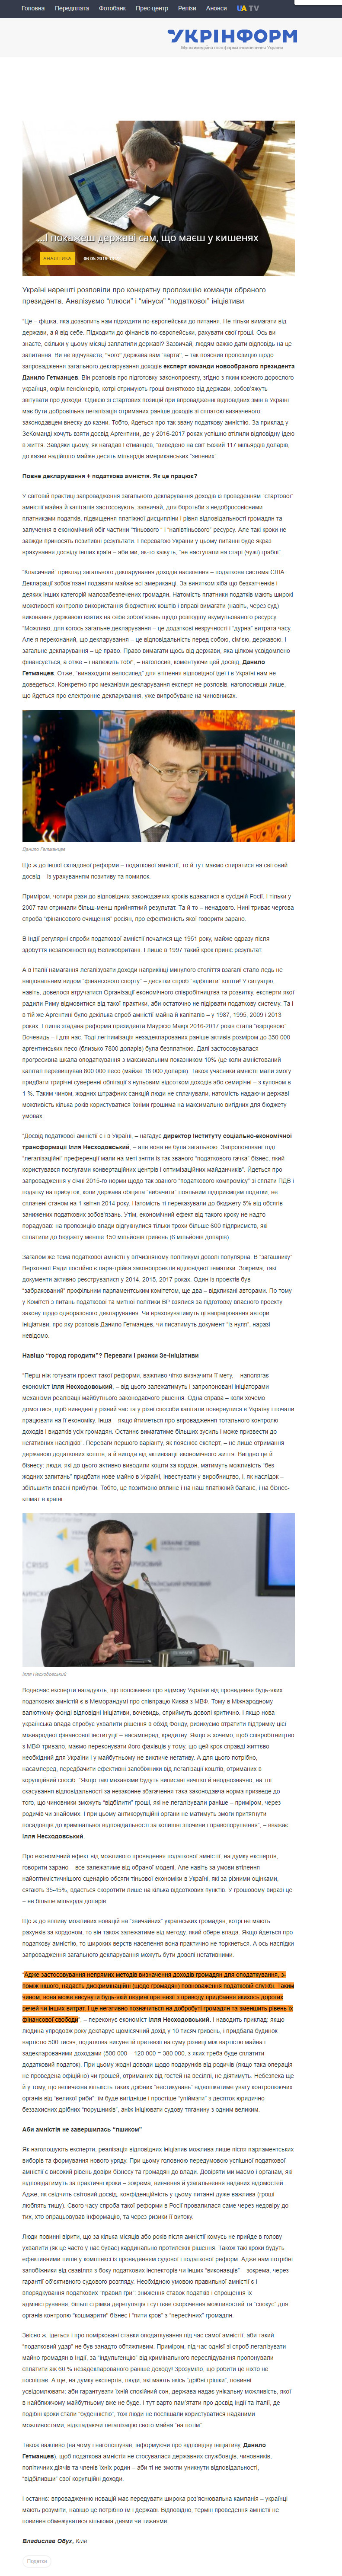 https://www.ukrinform.ua/rubric-economy/2694723-i-pokazes-derzavi-sam-so-maes-u-kisenah.html